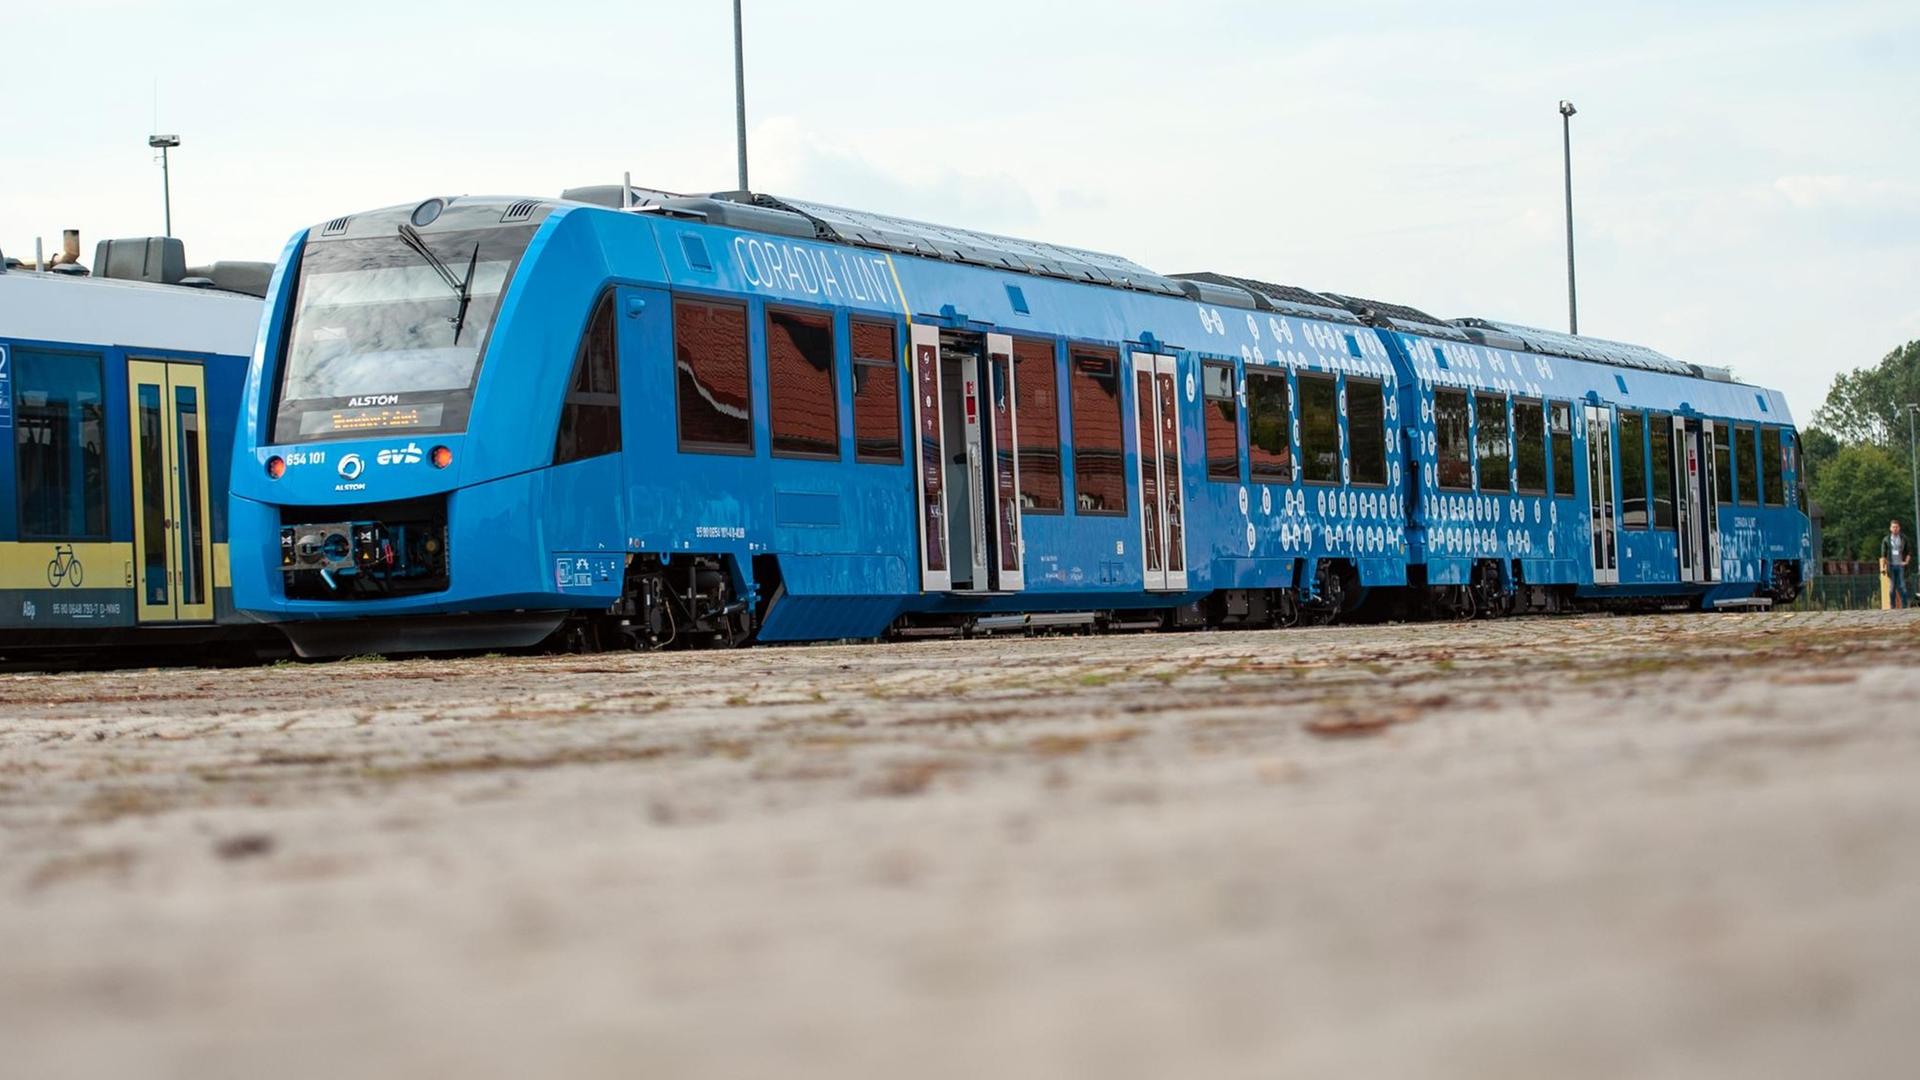 Ein neuer Brennstoffzellenzug, der mit Strom aus Wasserstoff fährt, steht im Bahnhof. Der in Salzgitter gebaute emissionsfreie Regionalzug fährt mit elektrischer Energie aus Wasserstoff. Bremervörde und Buxtehude verbinden.